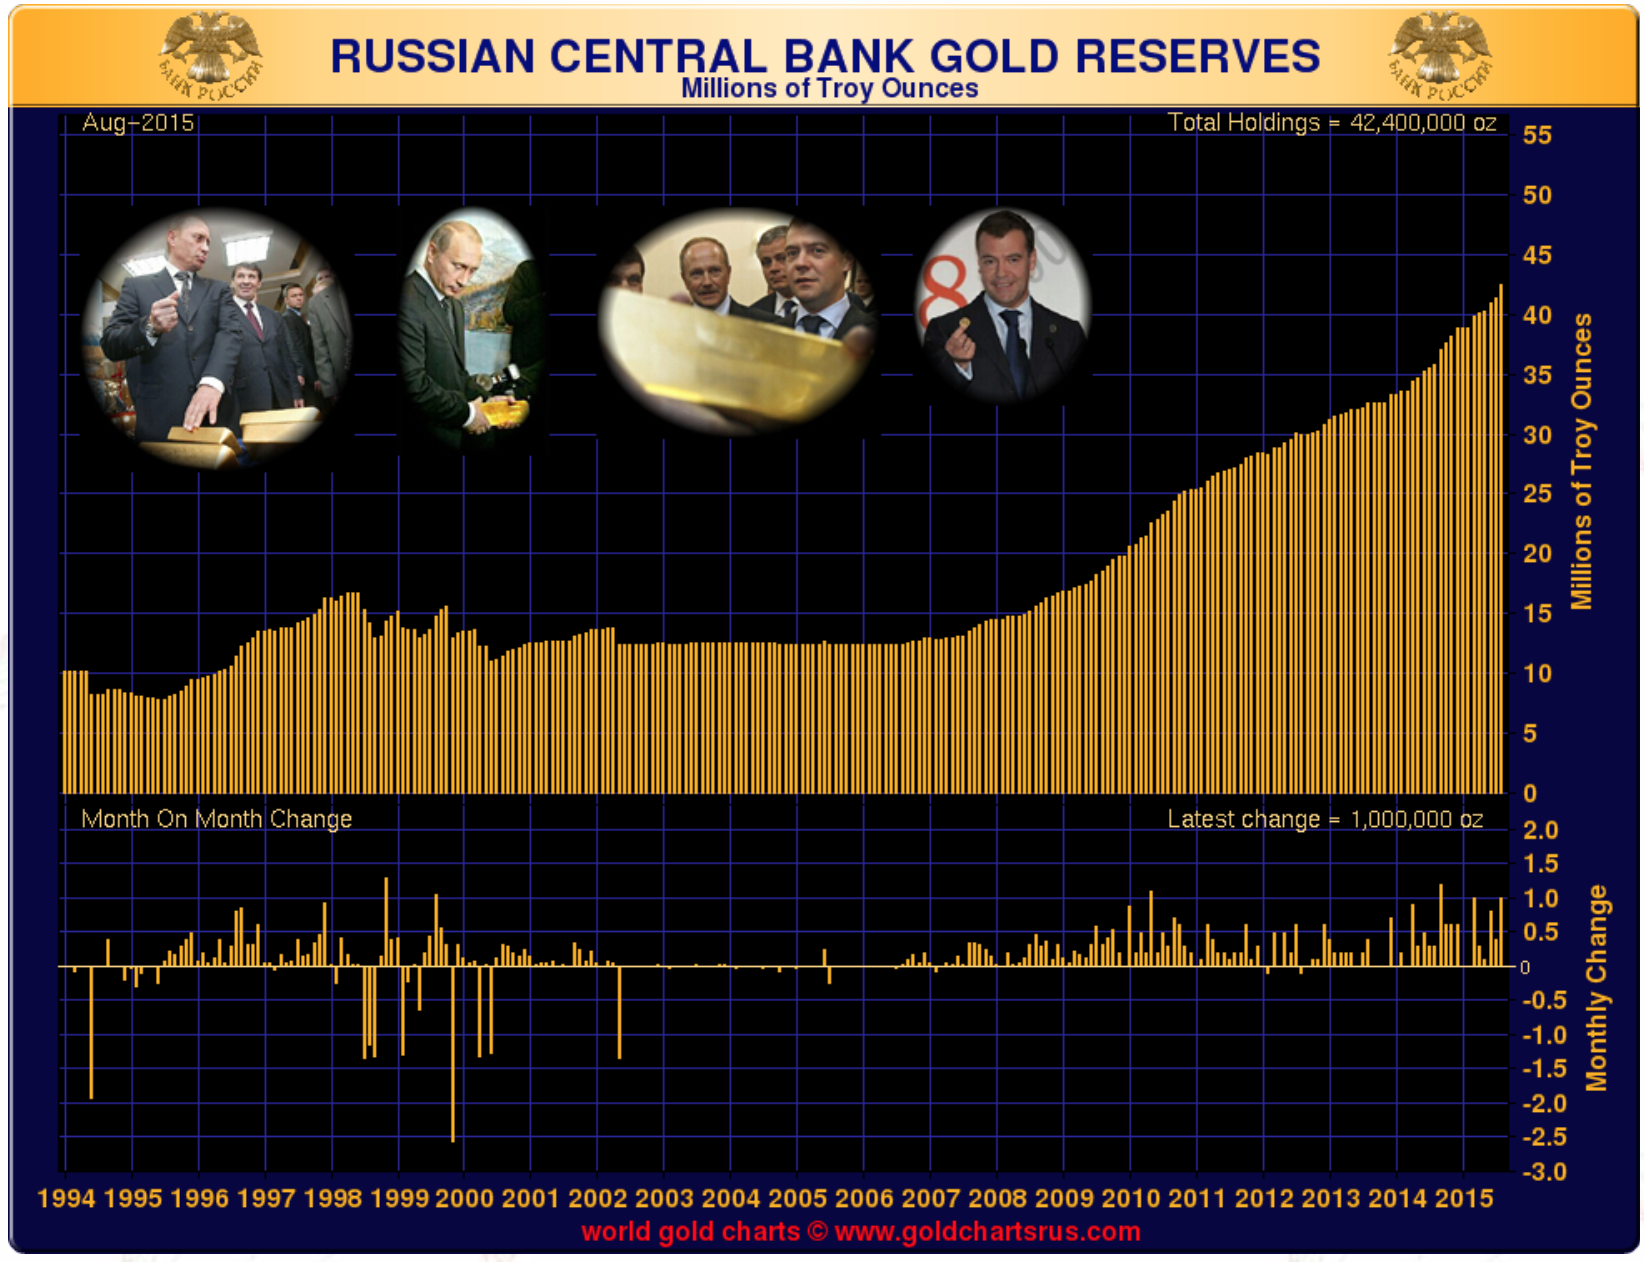 Achat d'or de la Russie